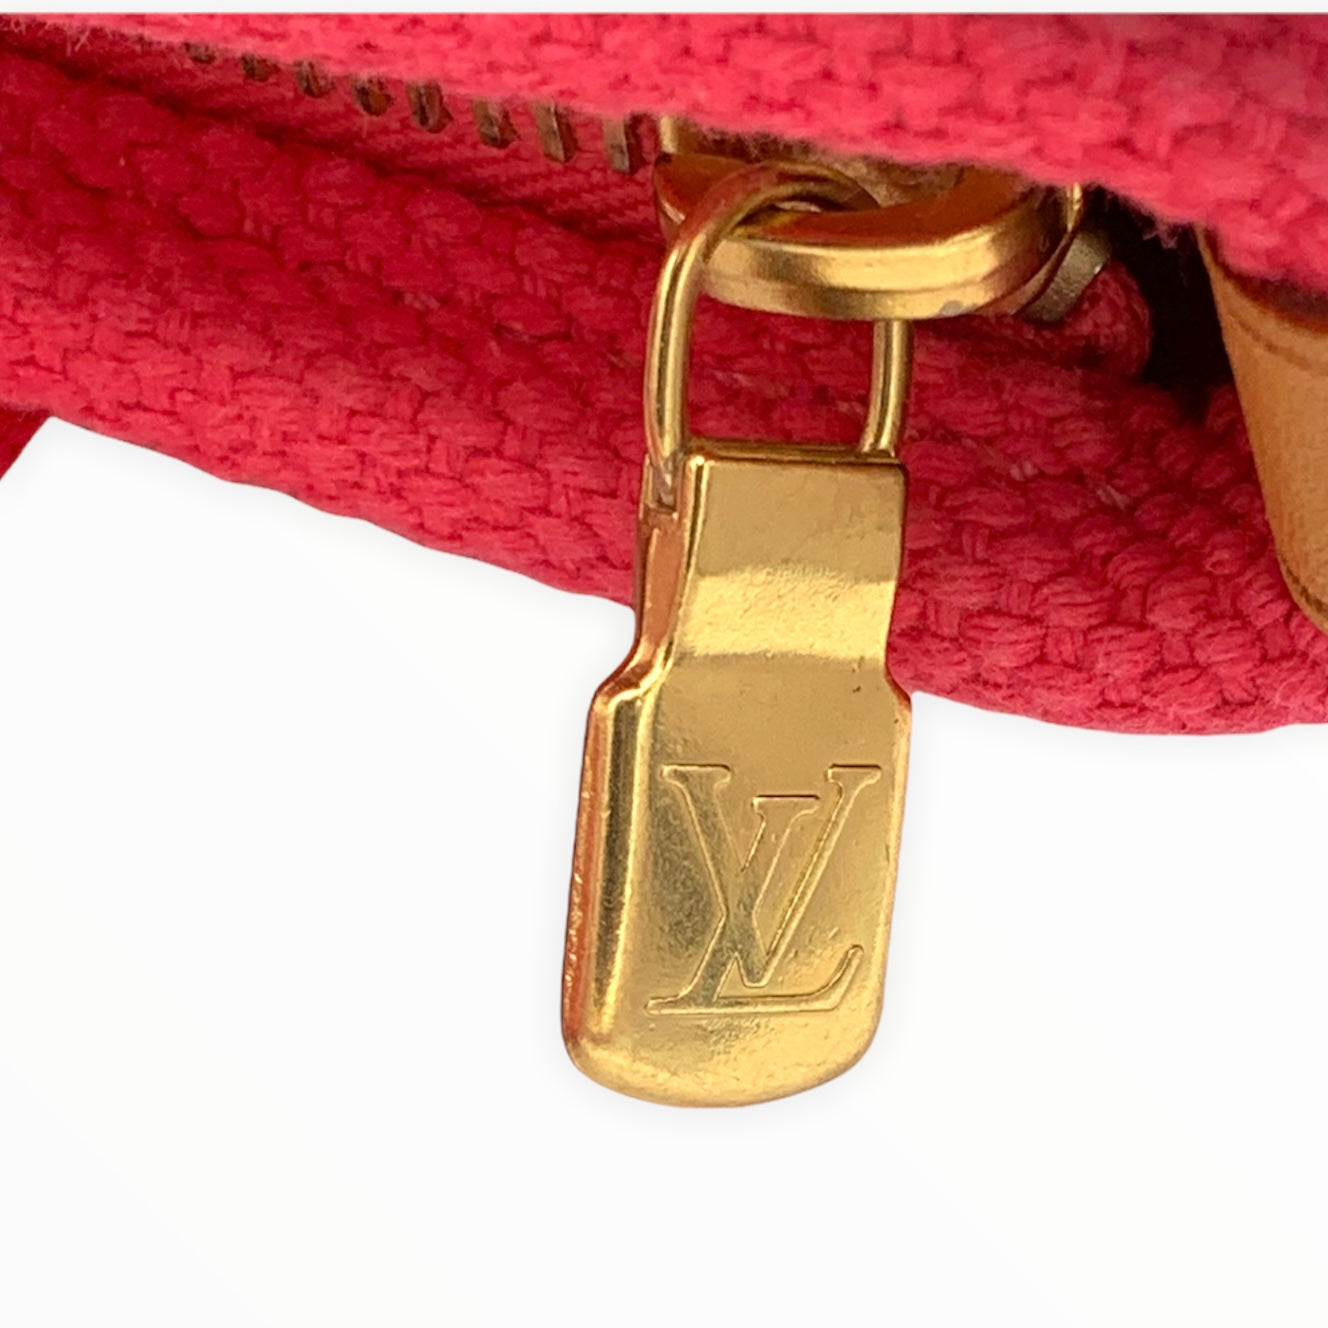 SOLD ONLINE - Louis Vuitton Antigua Cabas PM bag #louisvuittonbag